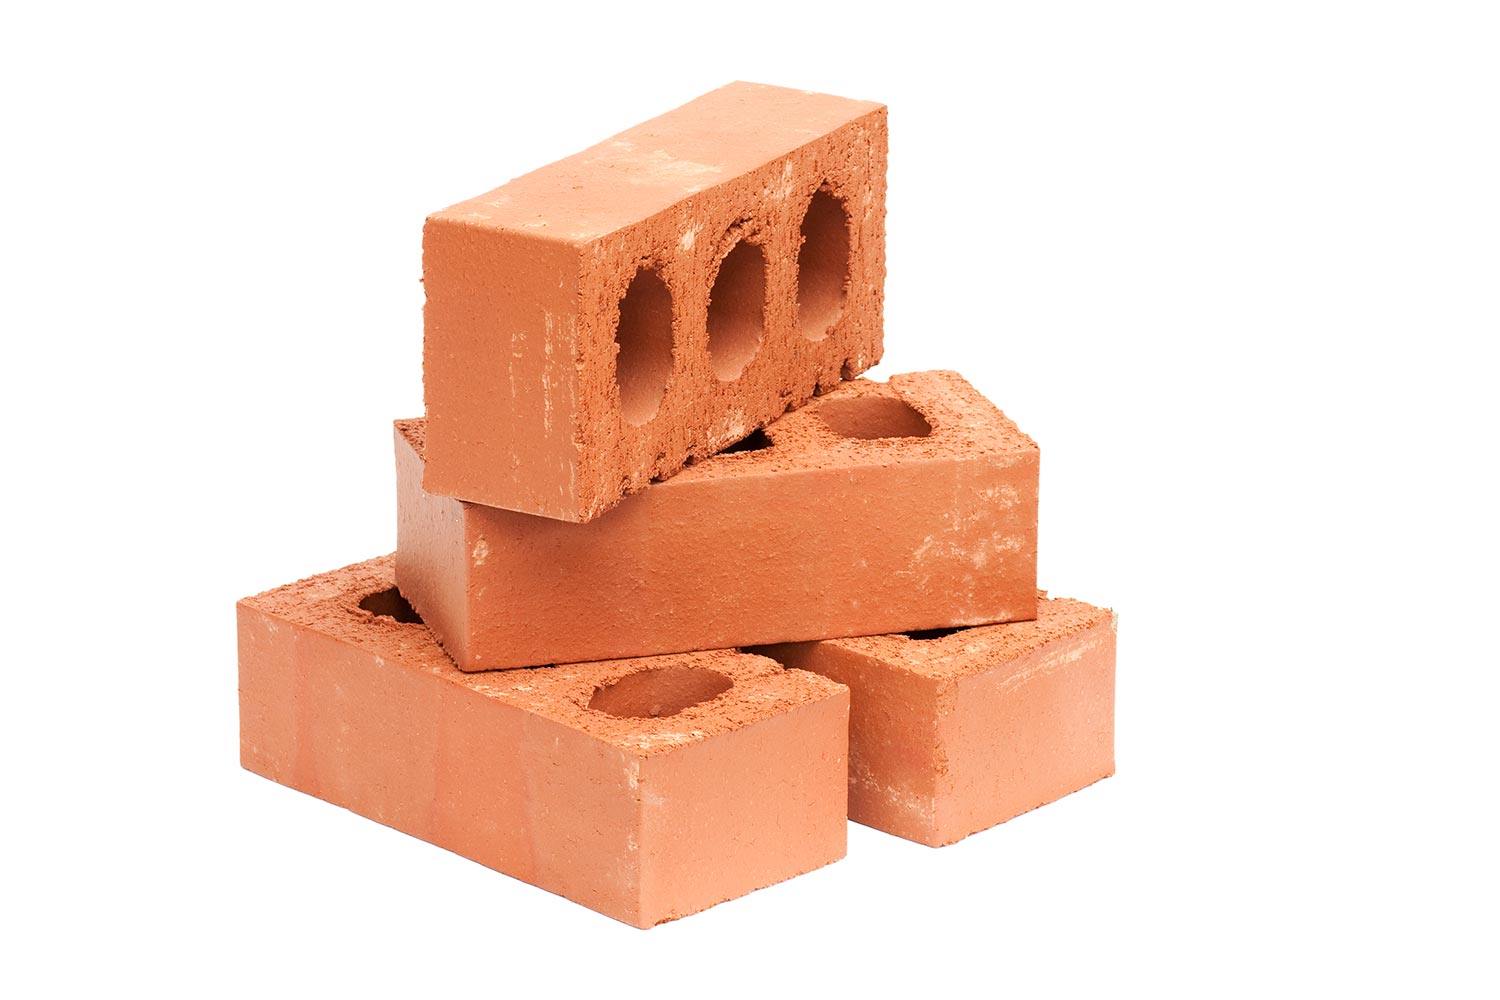 Four red bricks